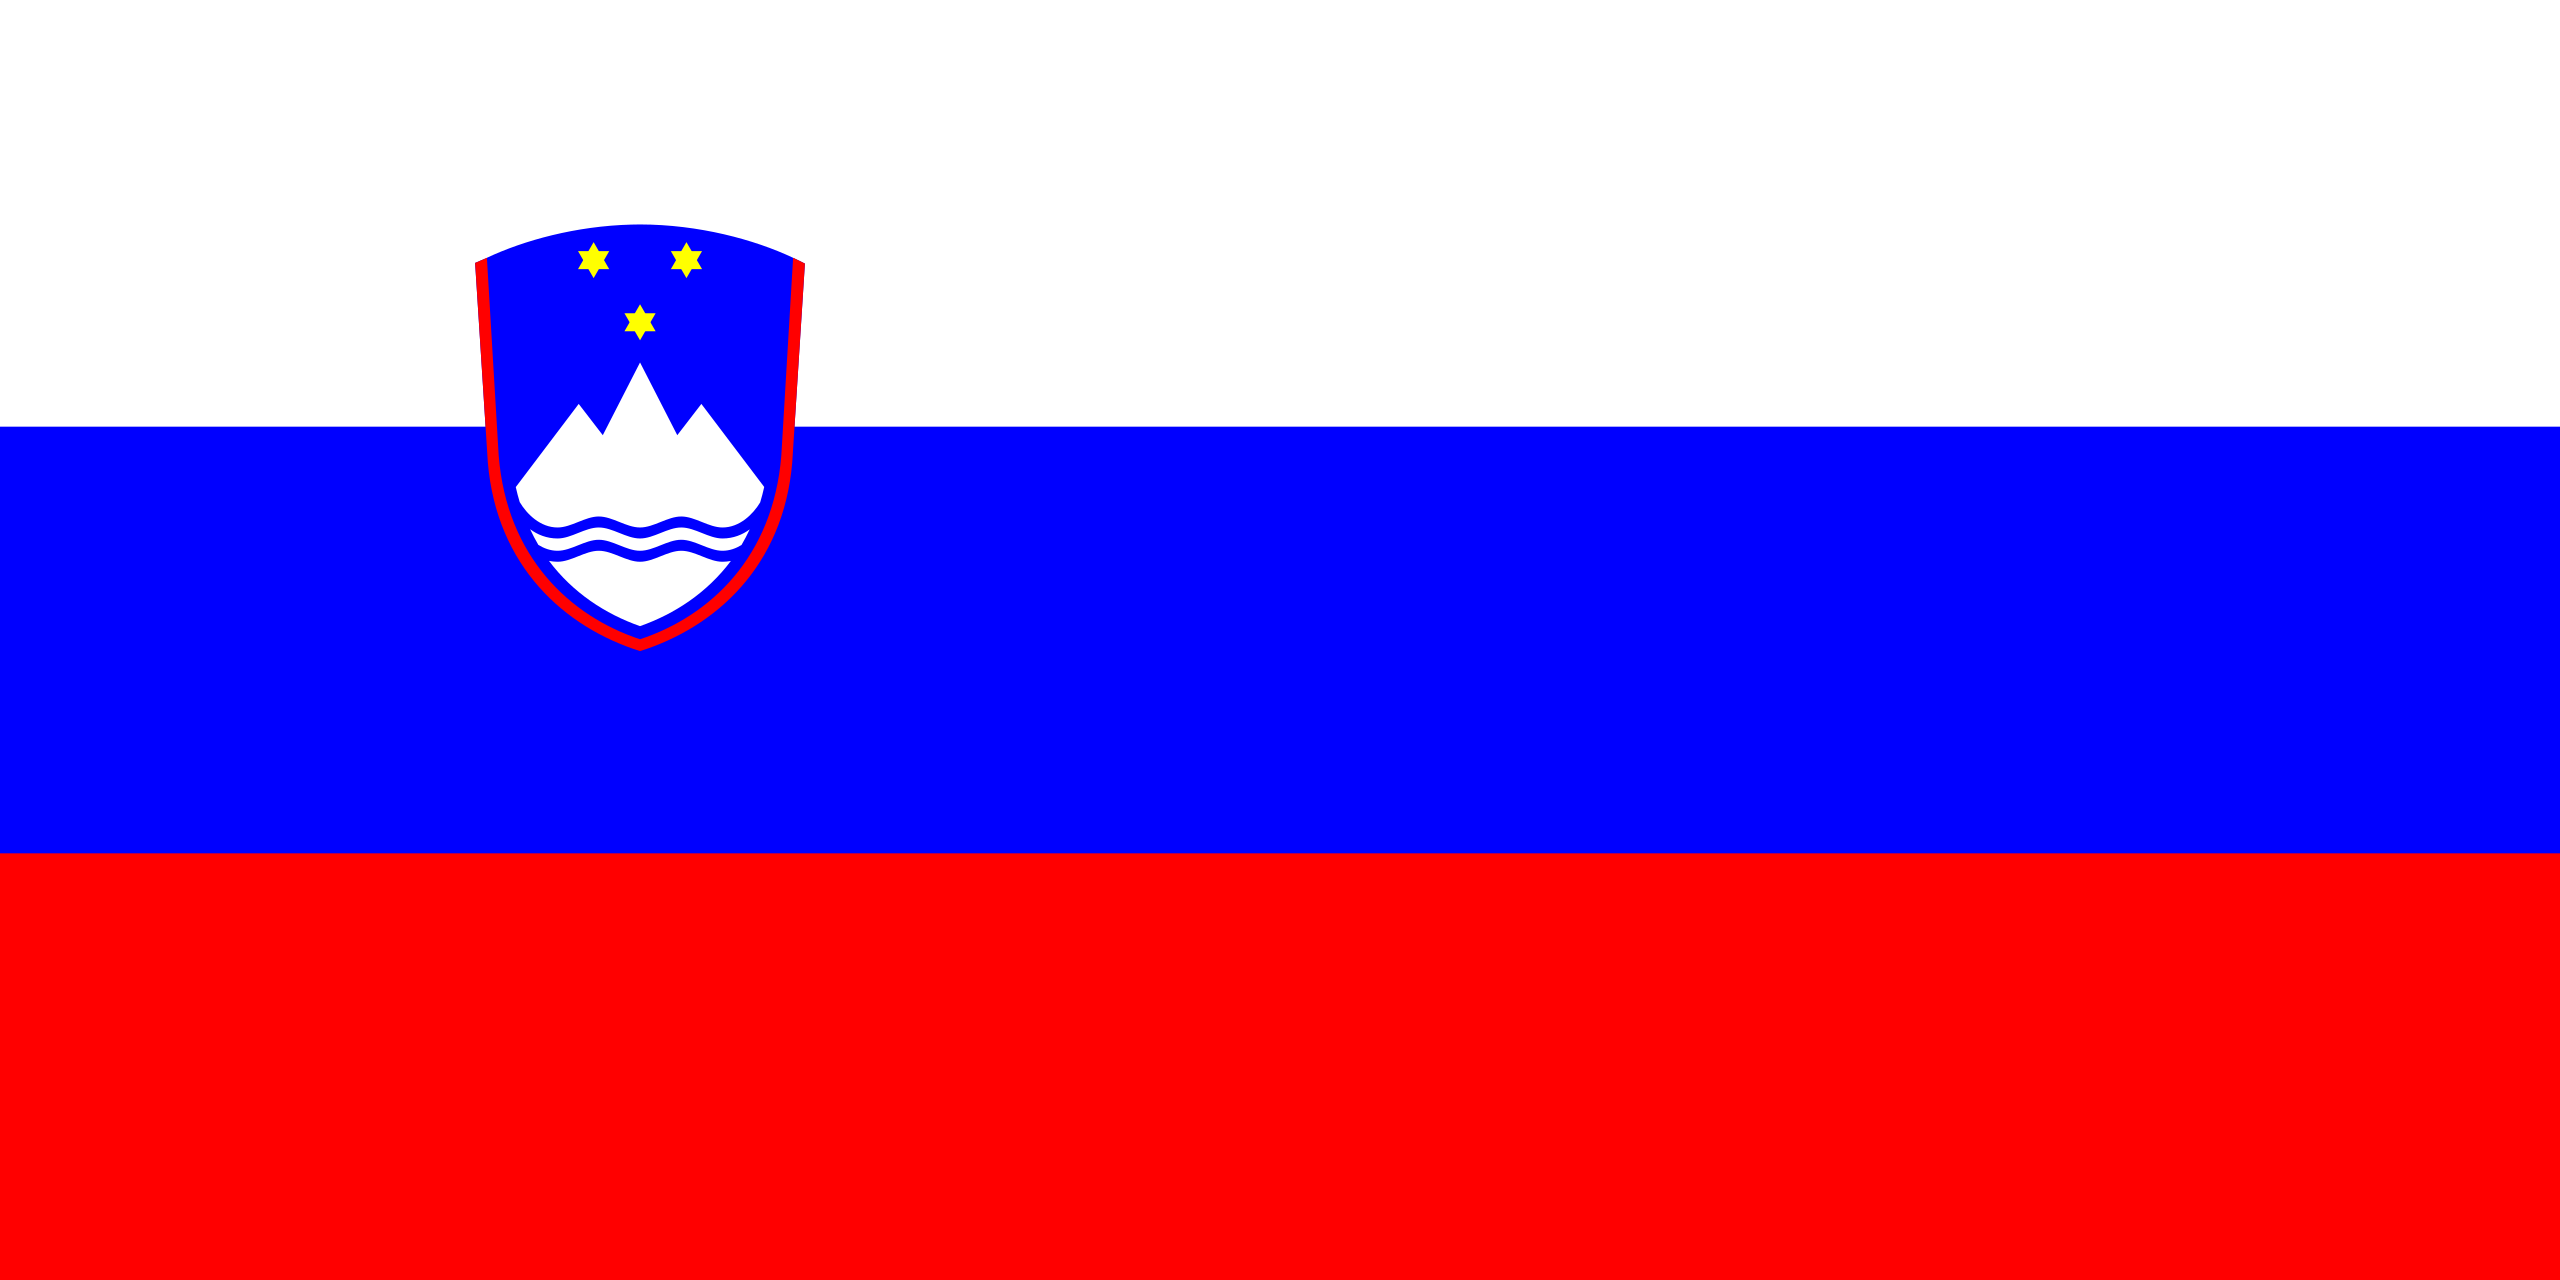 슬로베니아의 국기